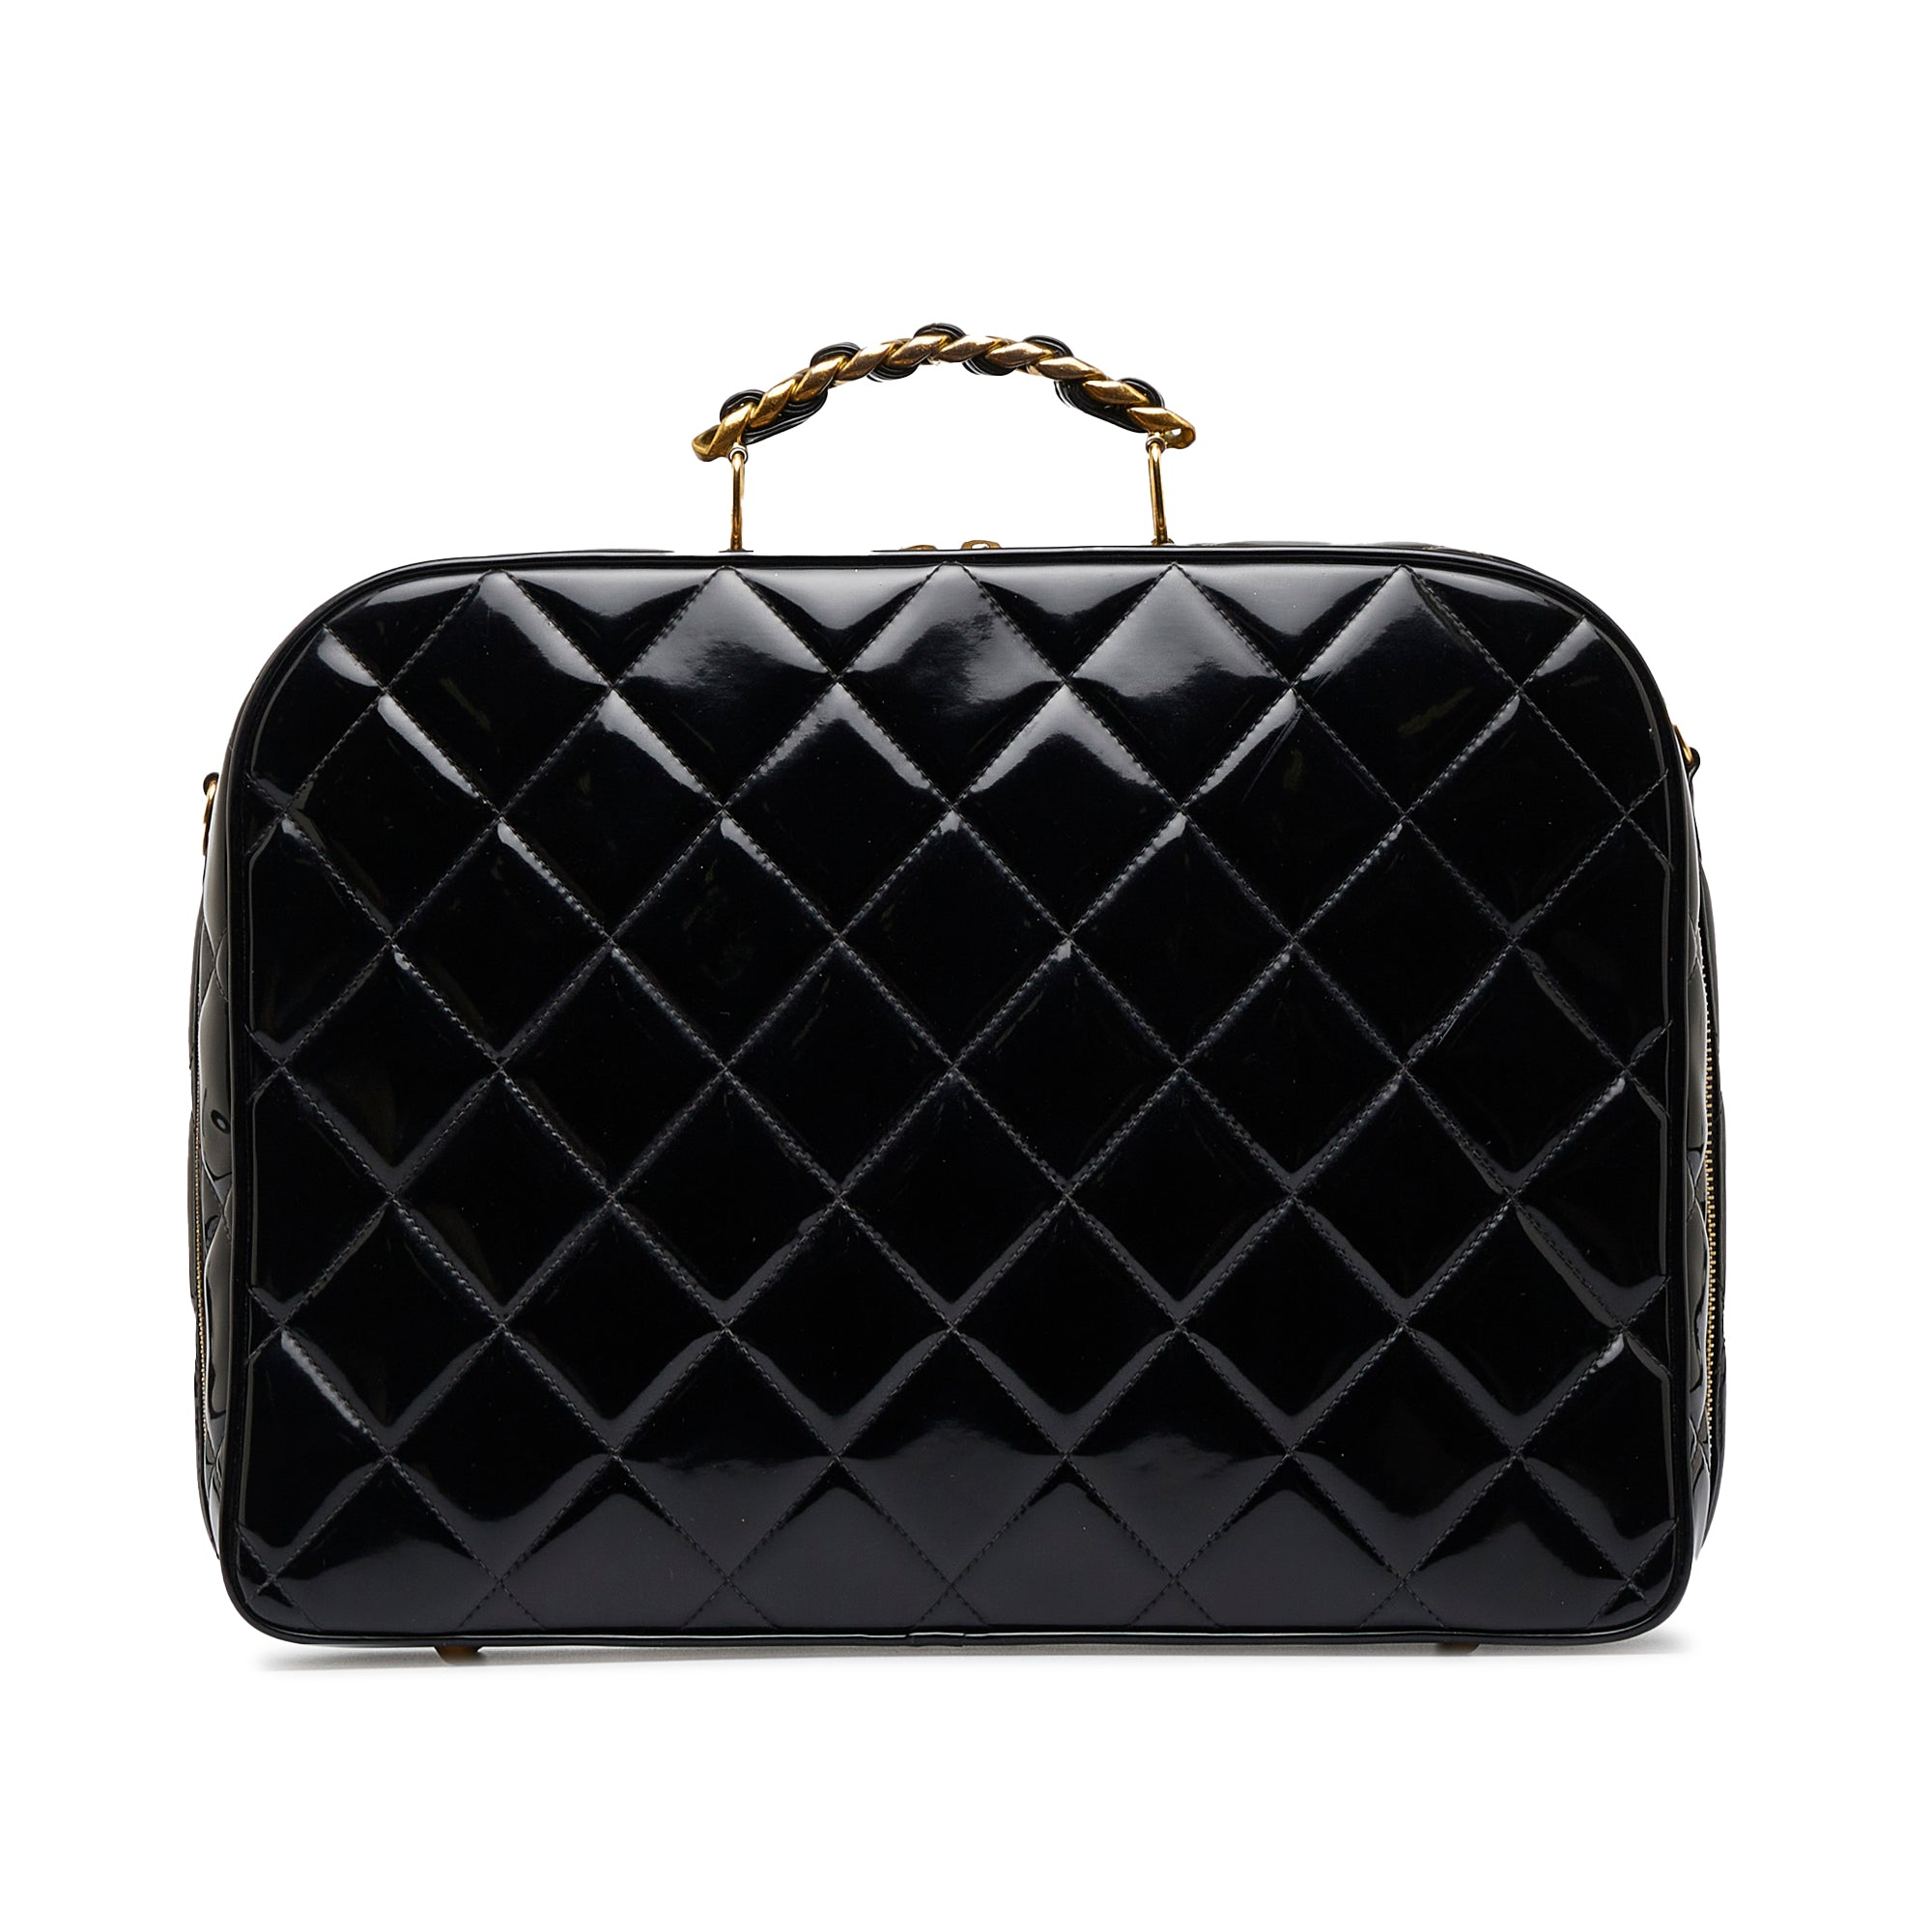 Chanel CHANEL Enamel Round Vanity Handbag Patent Black x White